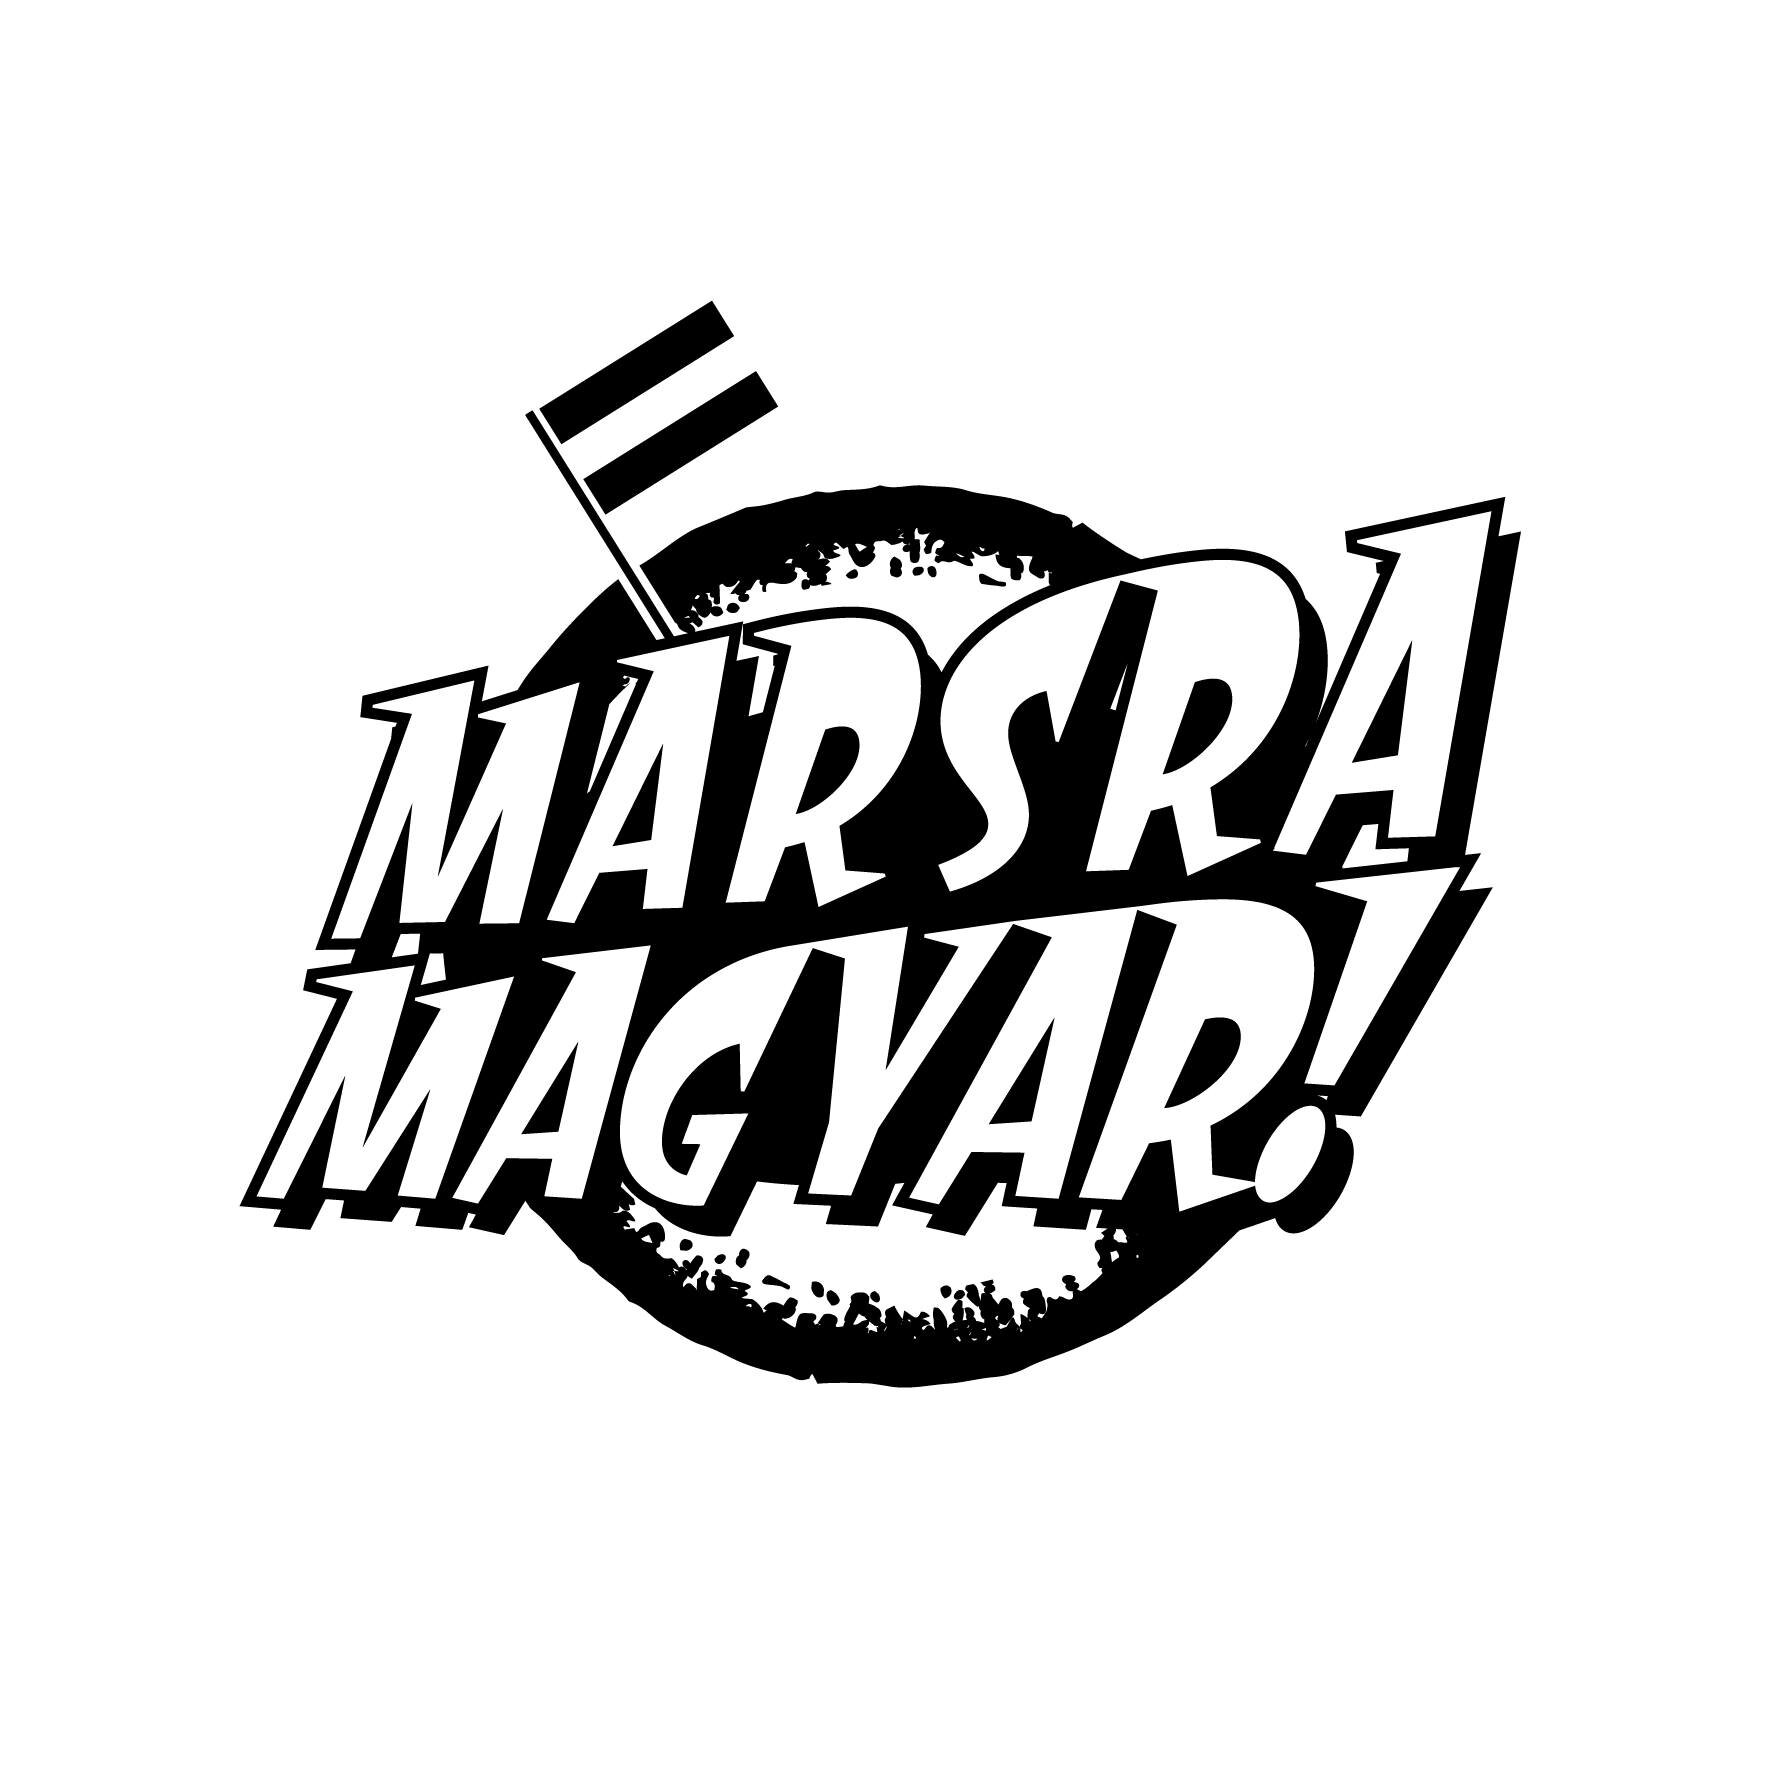 Marsra Magyar! ne zaman